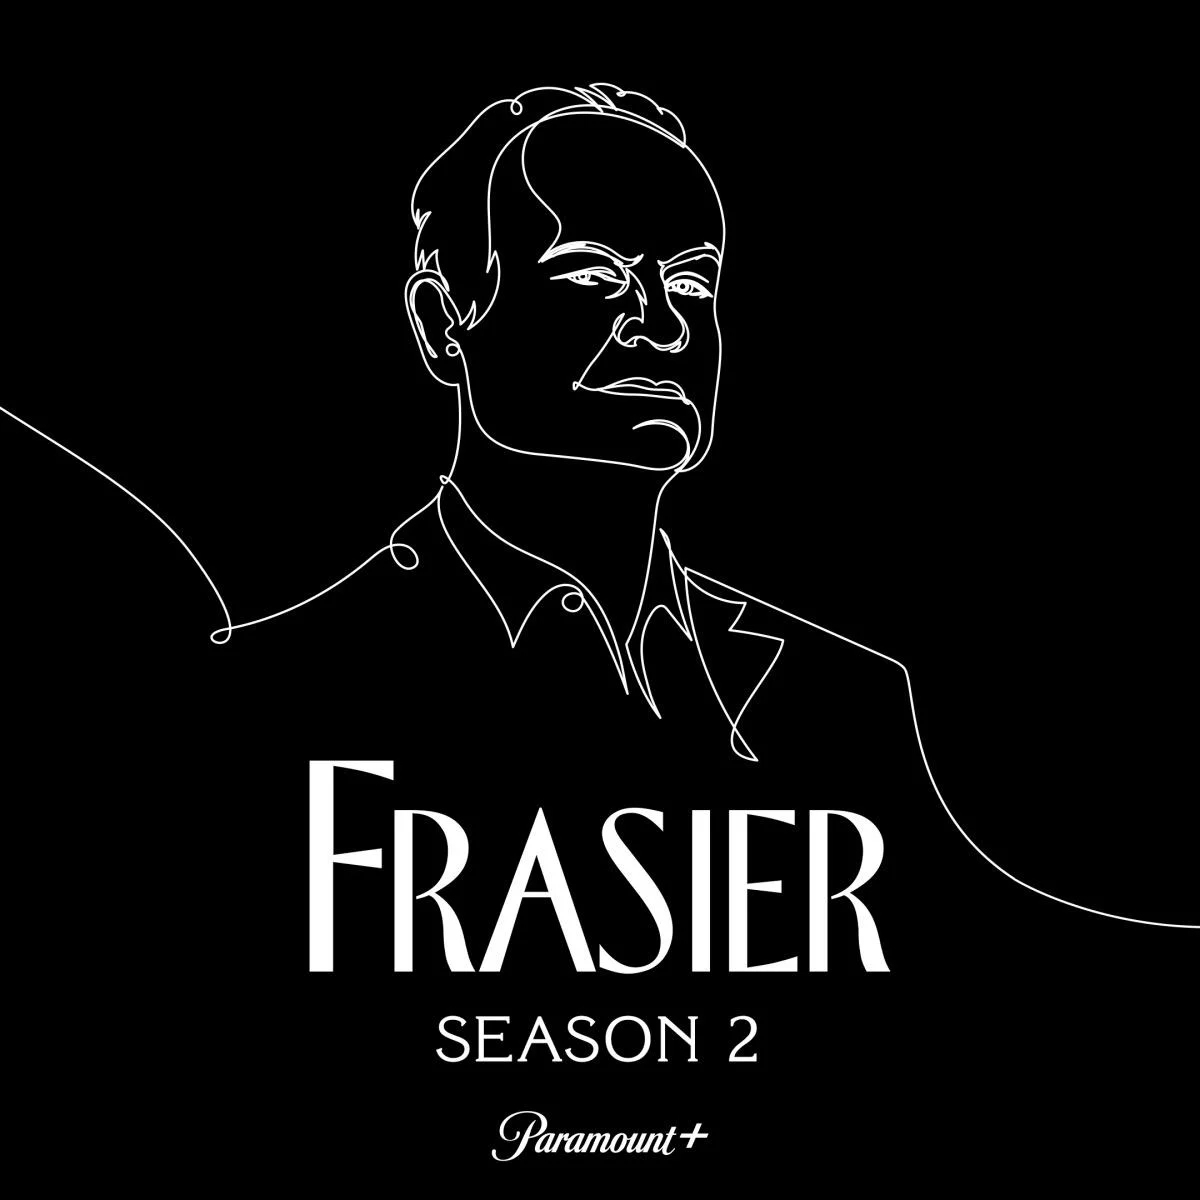 Frasier volverá para una segunda temporada en Paramount+